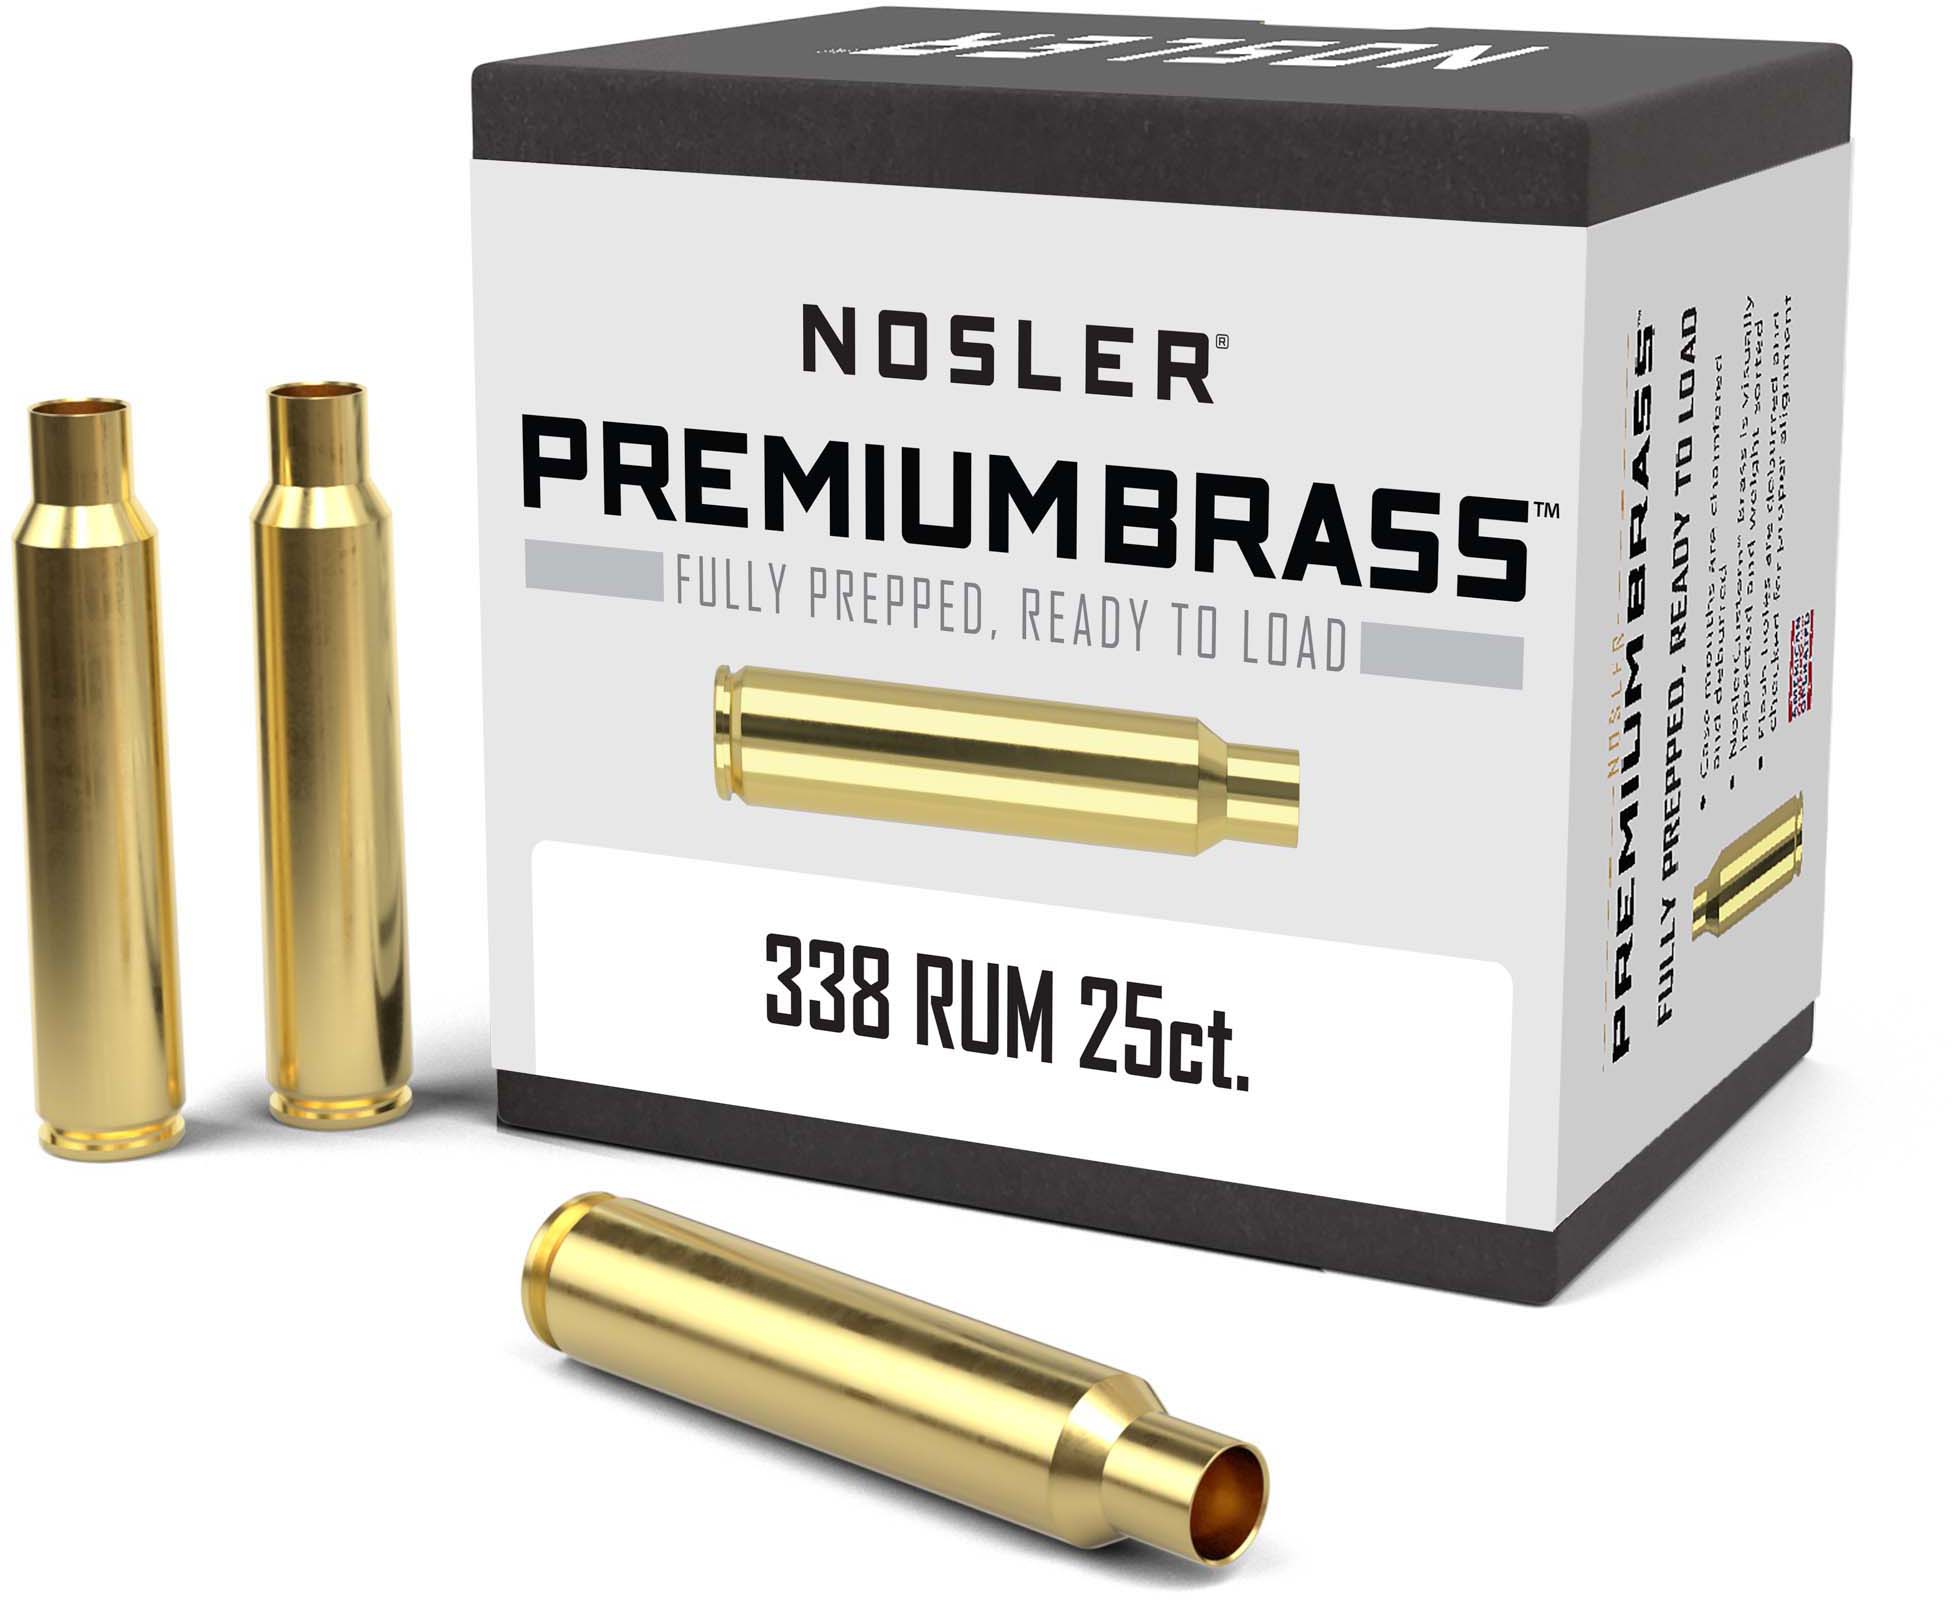 Nosler 338 Rum Brass (Brand New) – Custom Rifle Systems